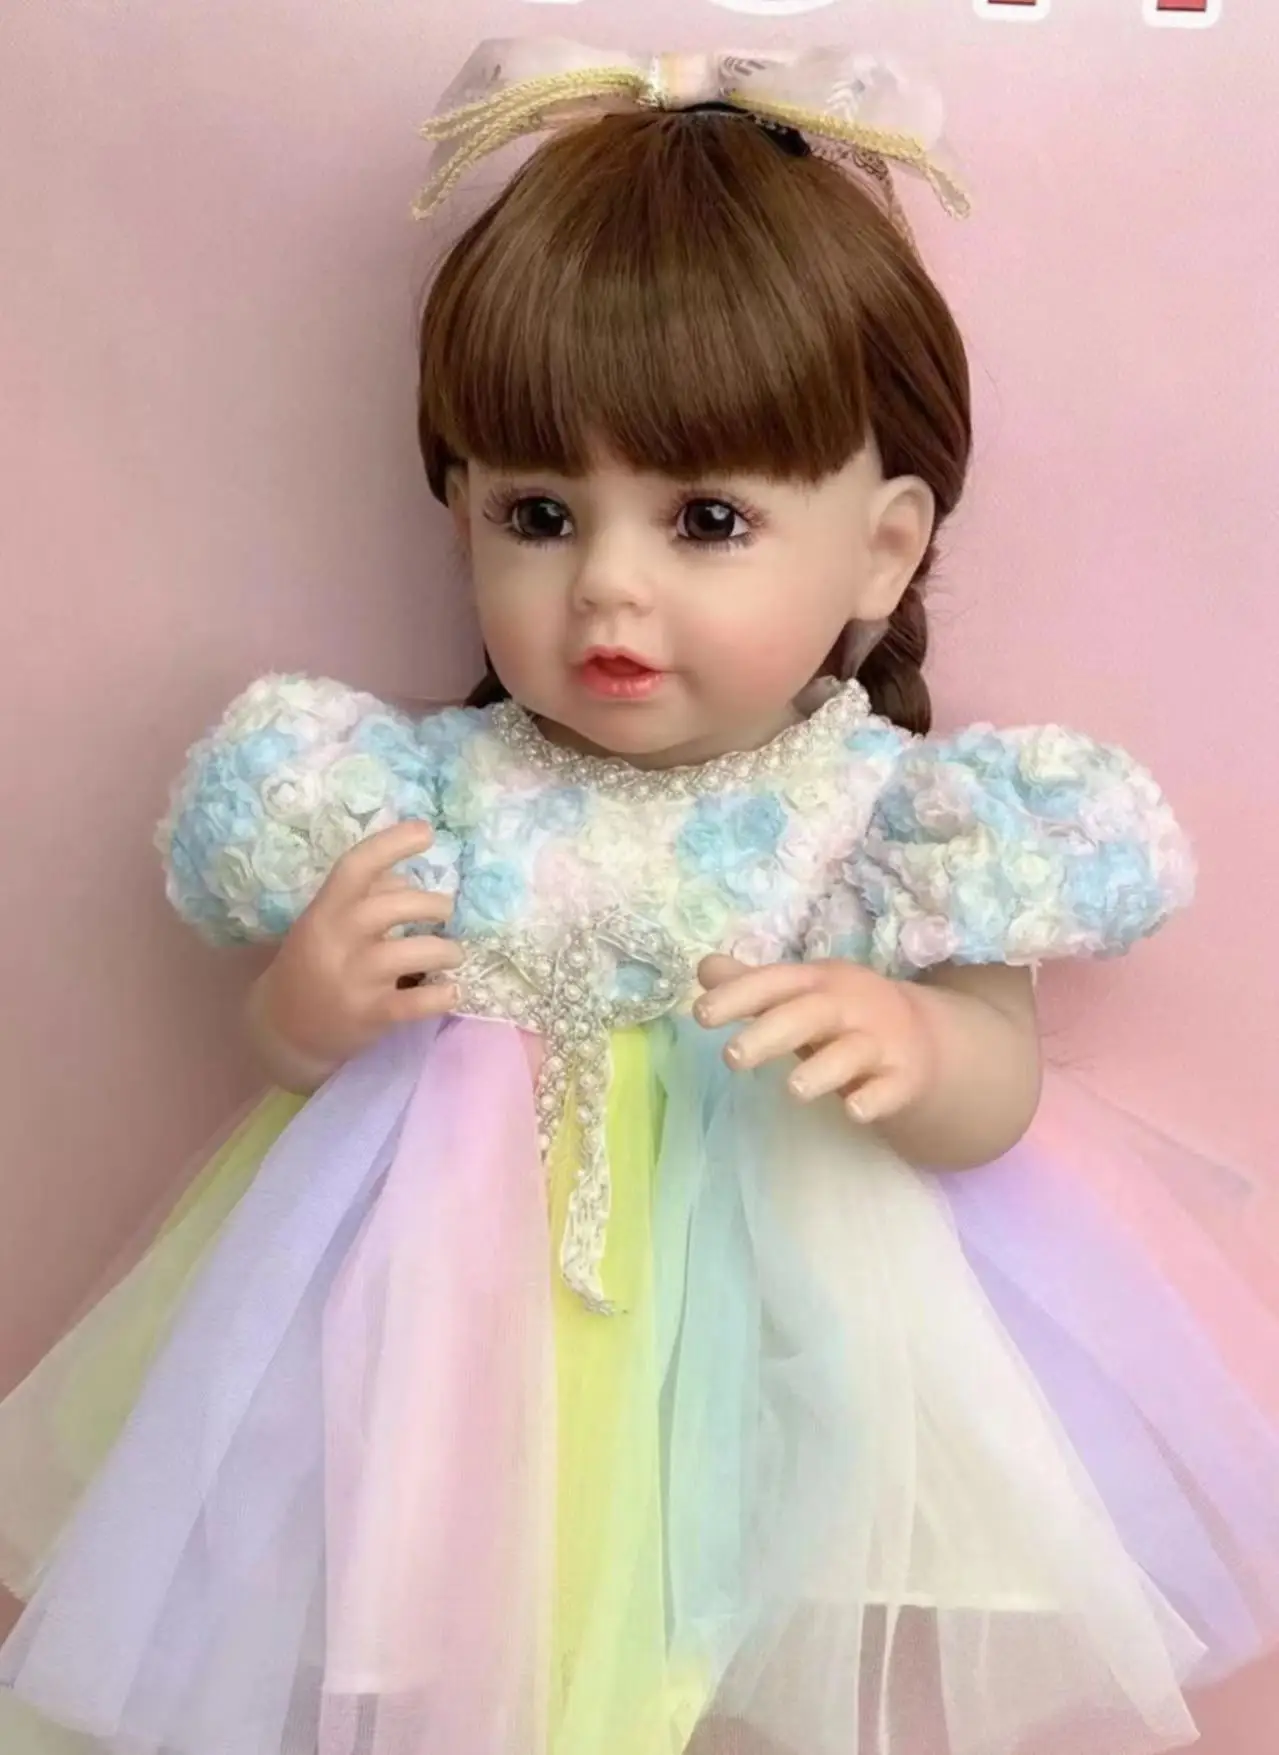 Подлинное Новое Платье Принцессы с длинными волосами, имитация Куклы, игрушка для душа и переодевания, подарок для девочки Изображение 1